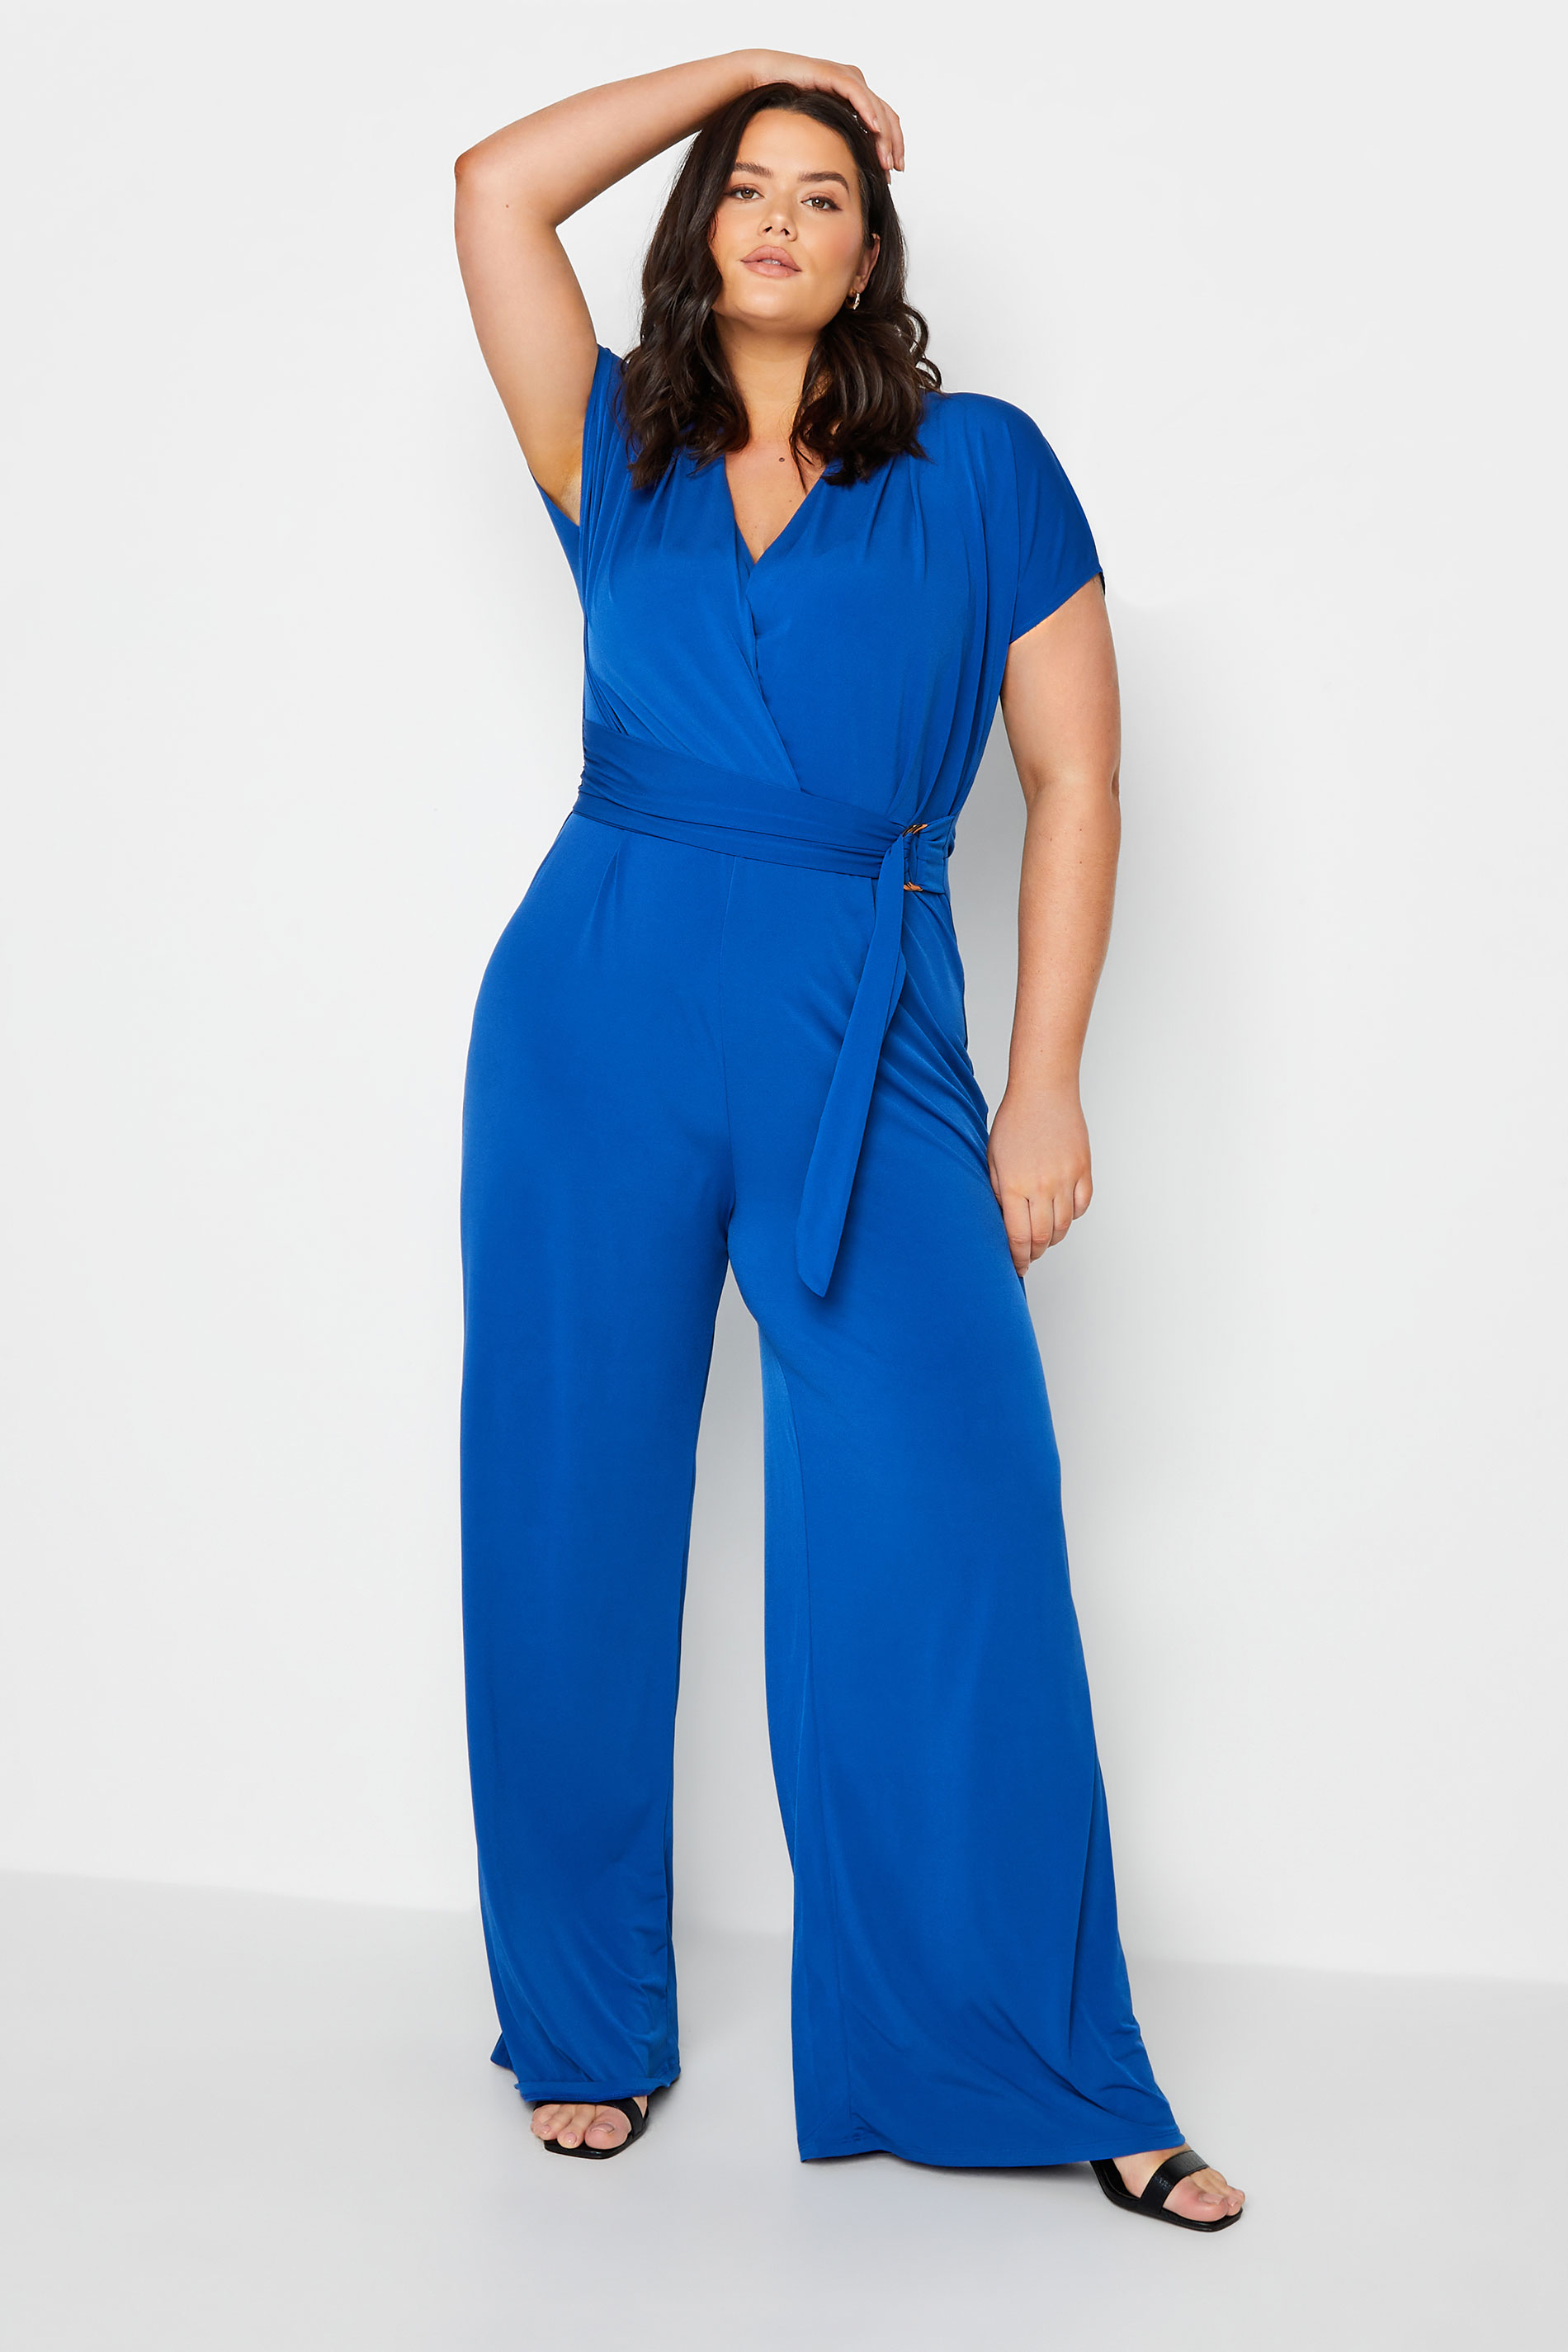 LTS Tall Women's Cobalt Blue Wrap Jumpsuit | Long Tall Sally  1